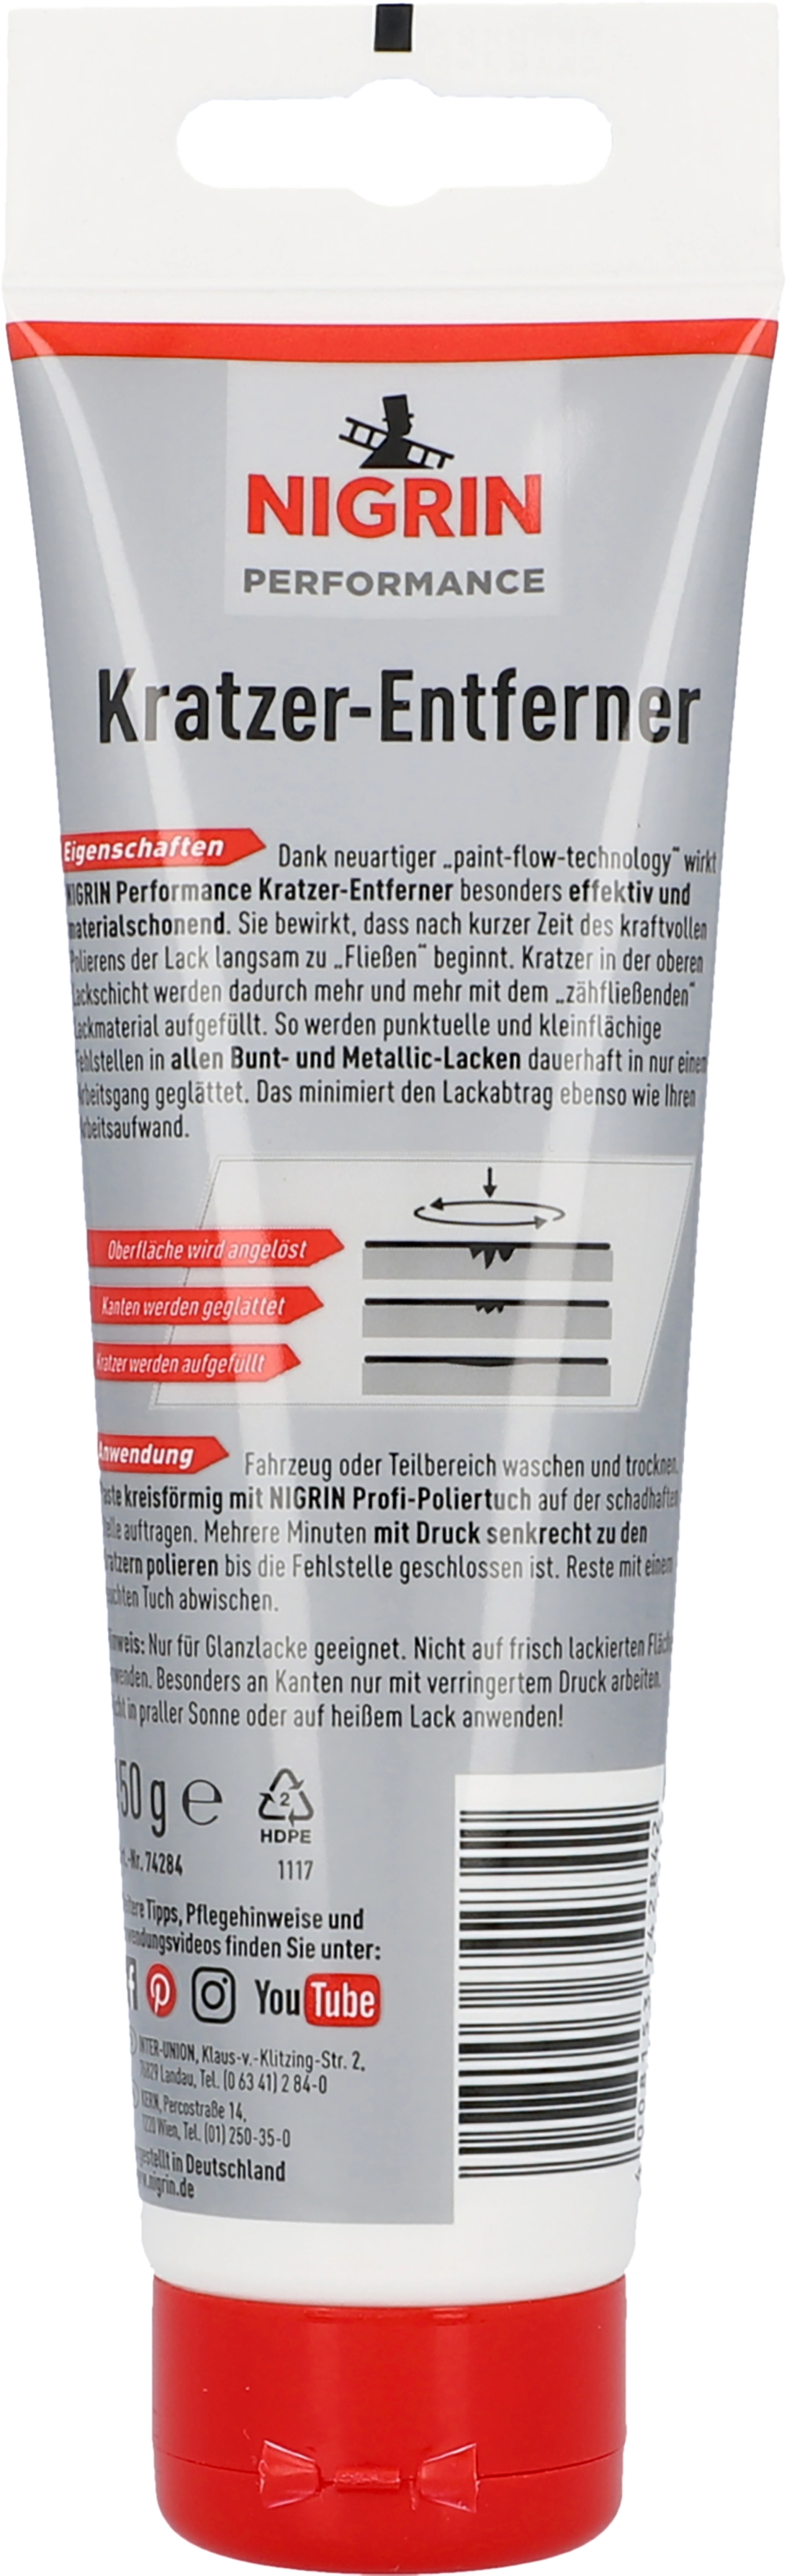 Nigrin Kratzer-Entferner 150 ml Angebot bei Sonderpreis Baumarkt